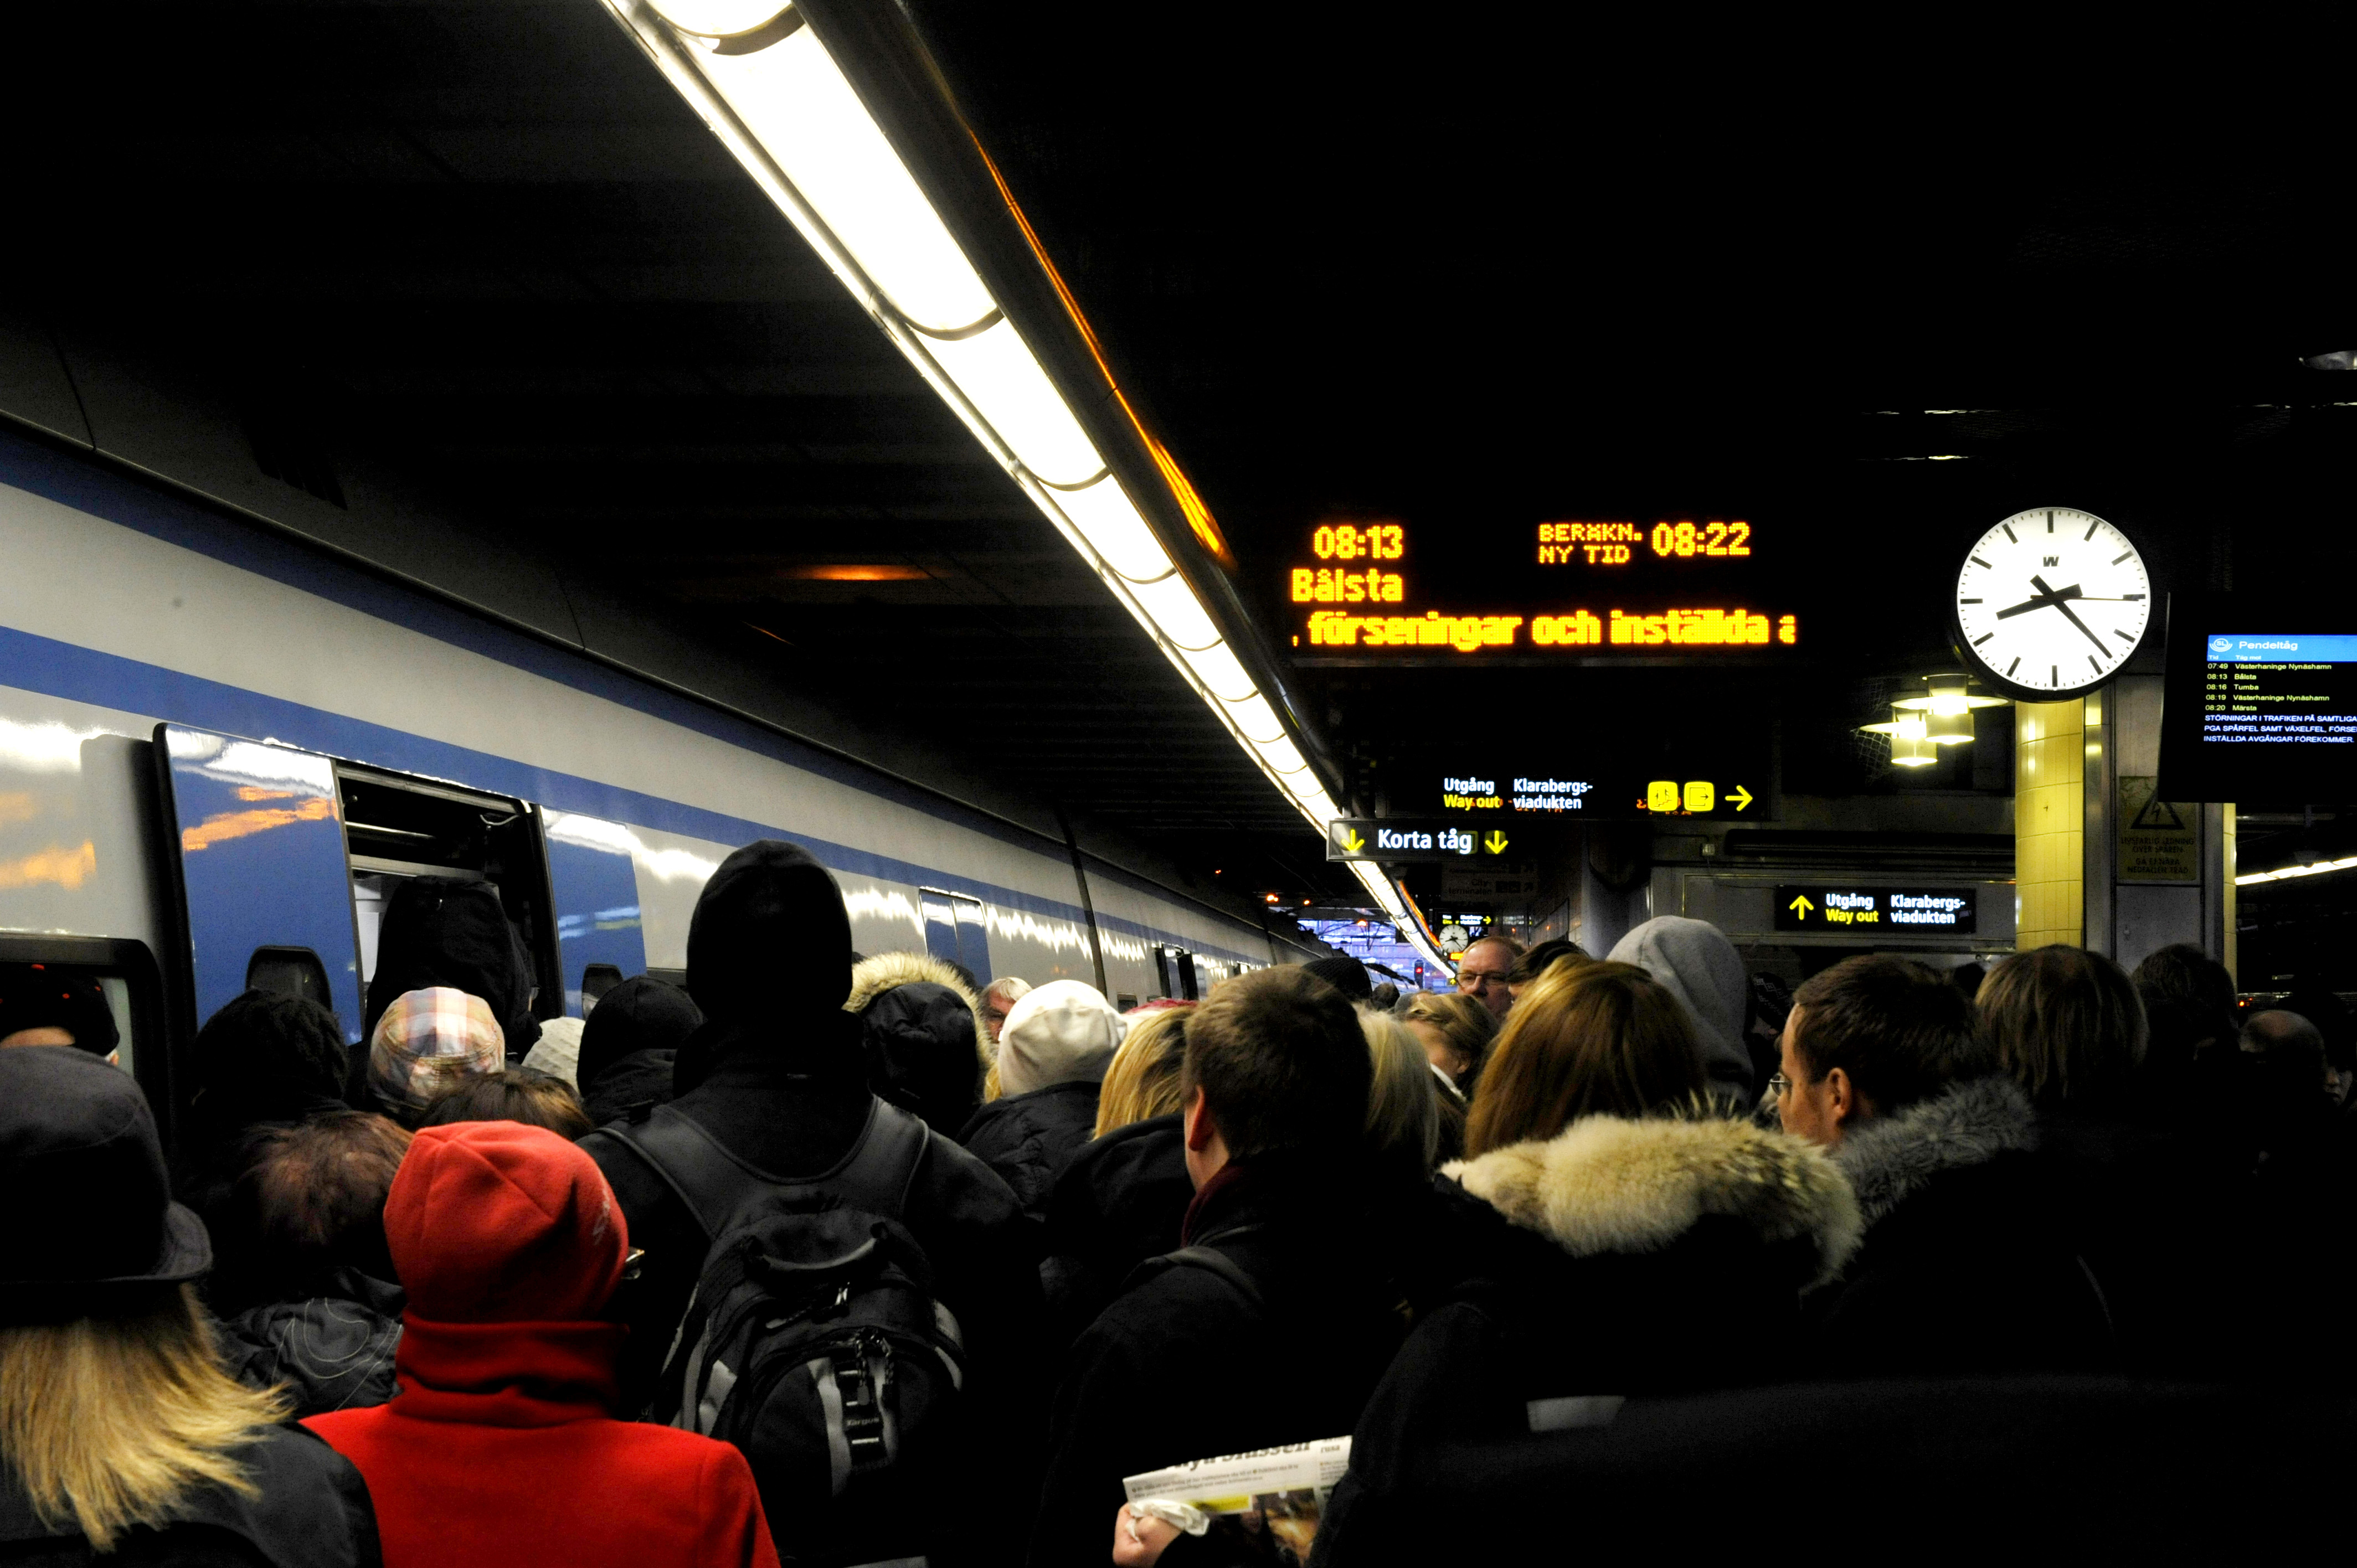 Stockholm, Tågtrafiken